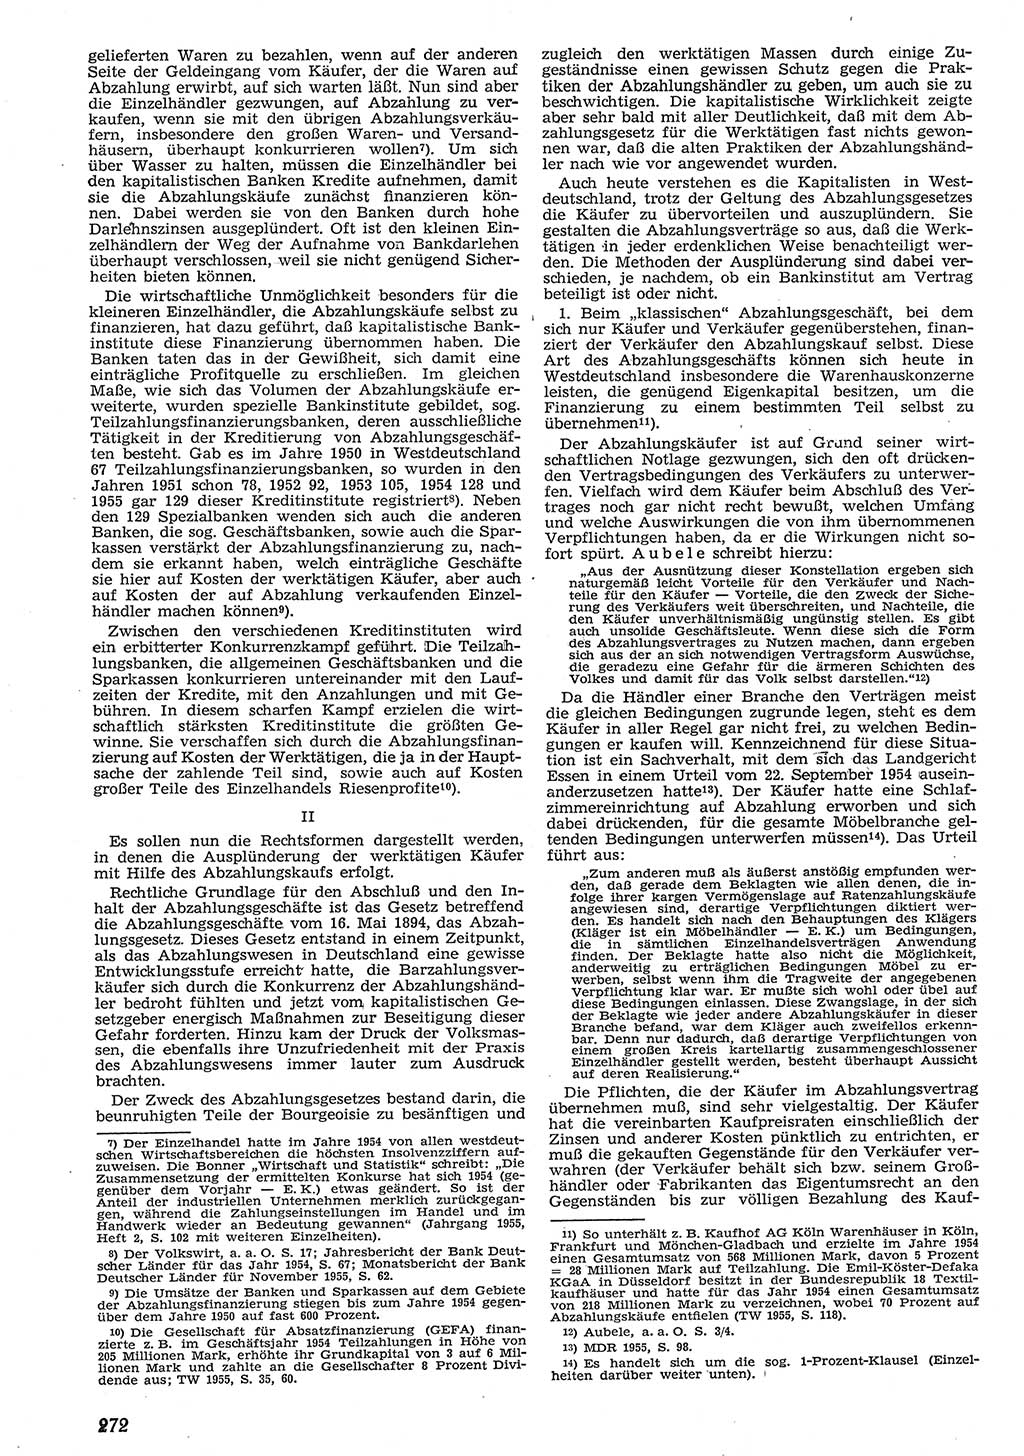 Neue Justiz (NJ), Zeitschrift für Recht und Rechtswissenschaft [Deutsche Demokratische Republik (DDR)], 10. Jahrgang 1956, Seite 272 (NJ DDR 1956, S. 272)